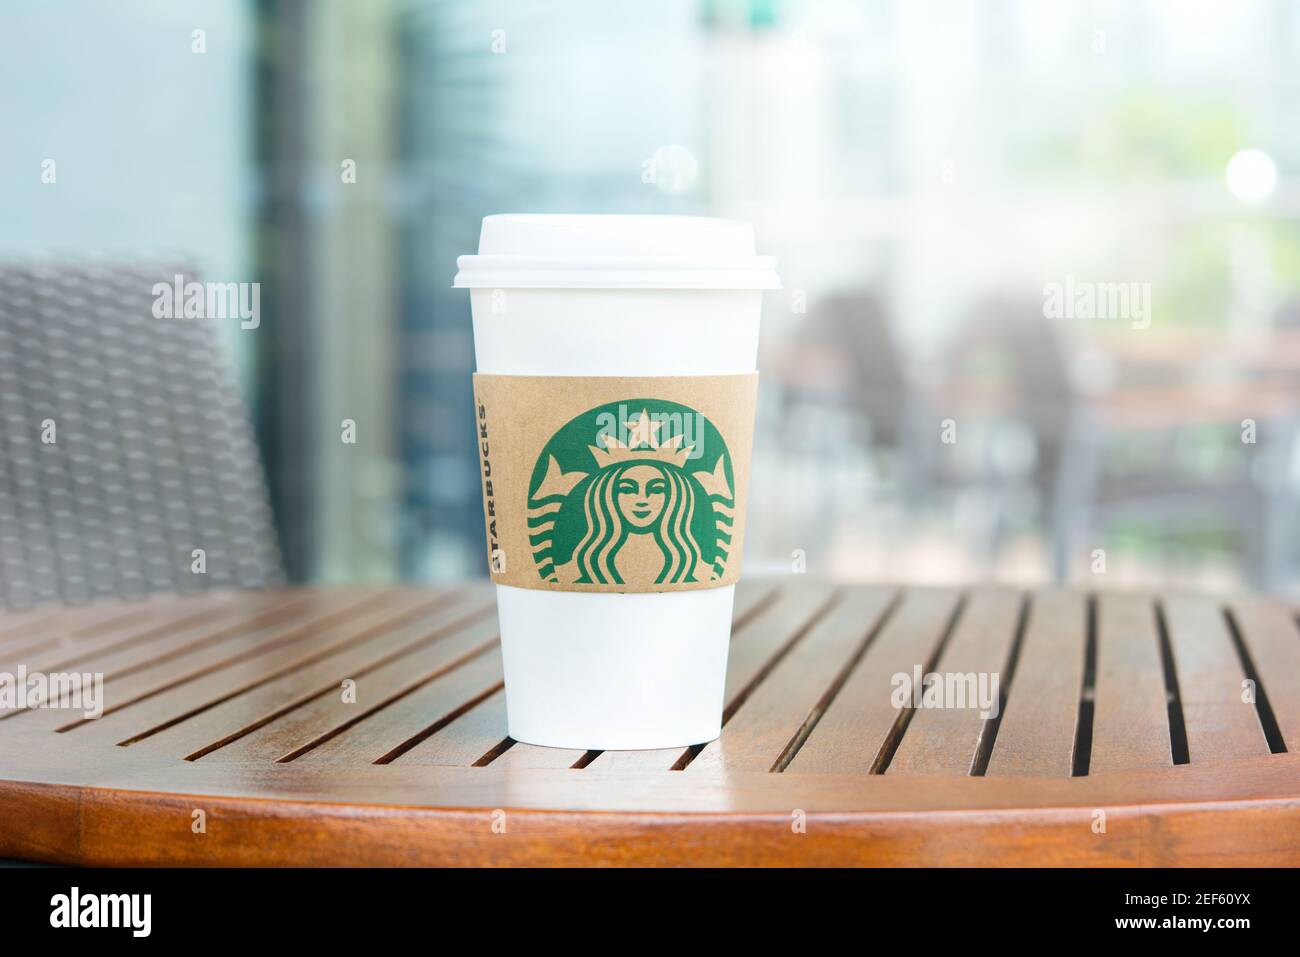 BANGKOK, THAÏLANDE - 29 JUIN 2016 : café Starbucks à emporter sur table en bois dans le café Starbucks Banque D'Images